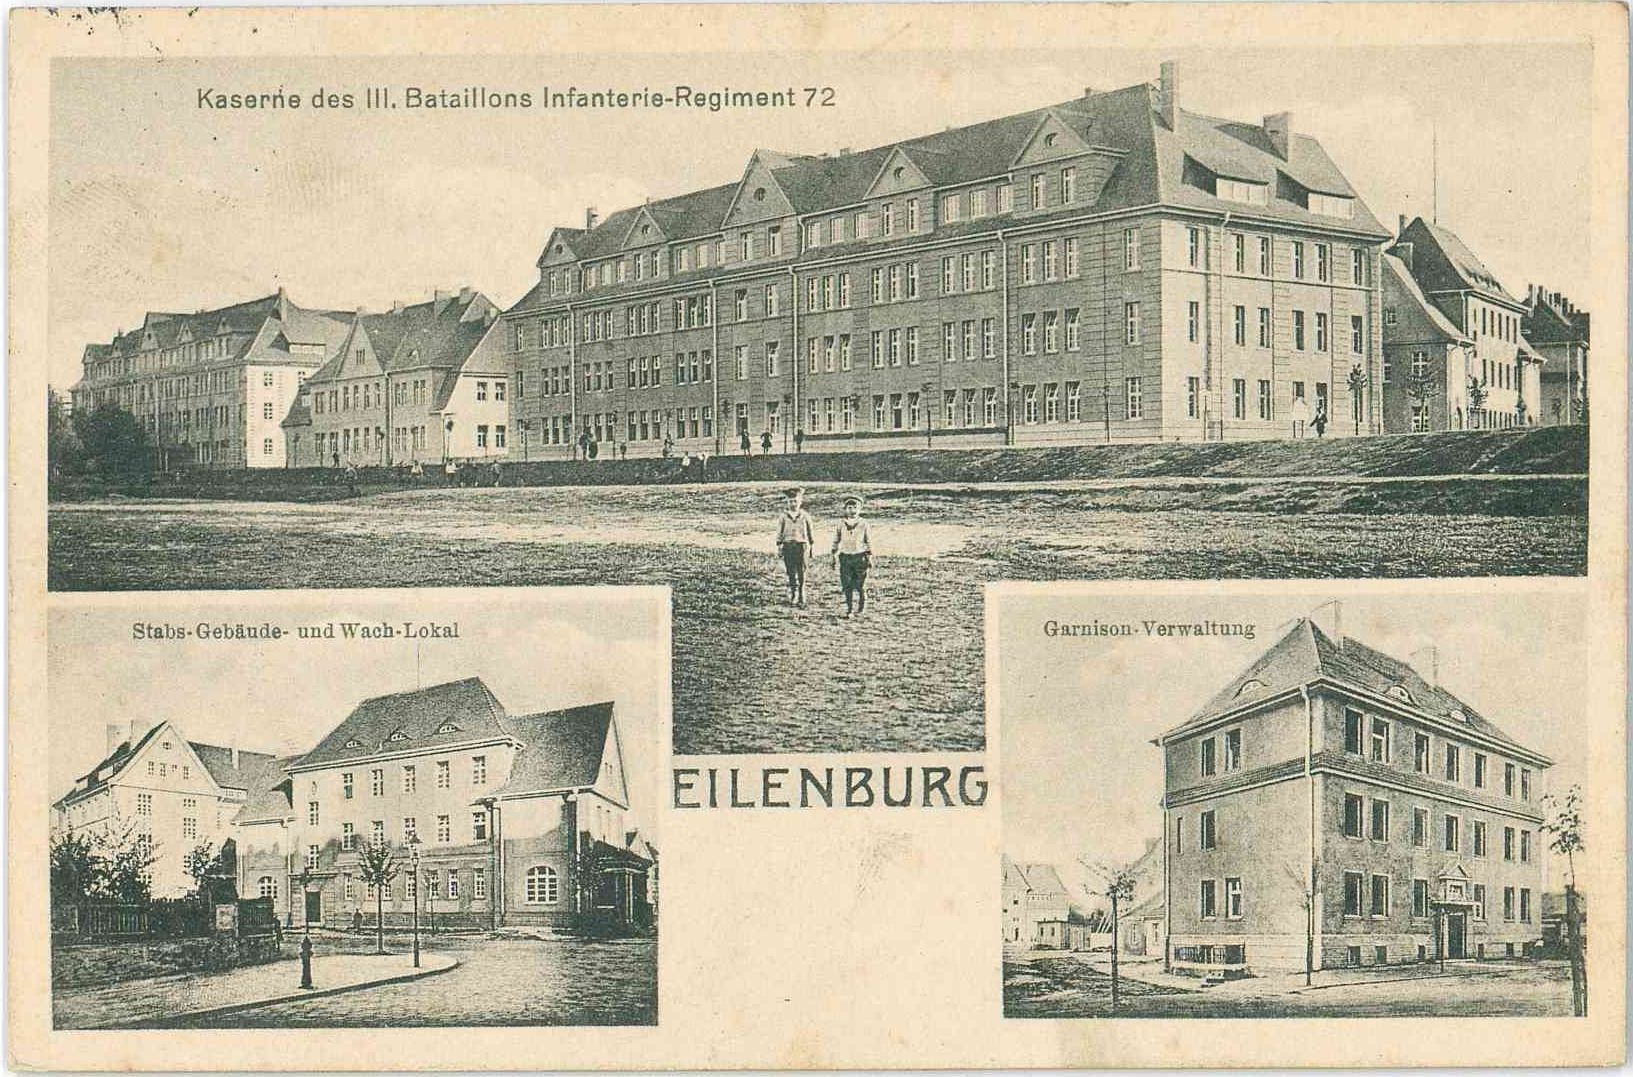 Eilenburg militärische Einrichtungen (Stadtmuseum Eilenburg RR-P)